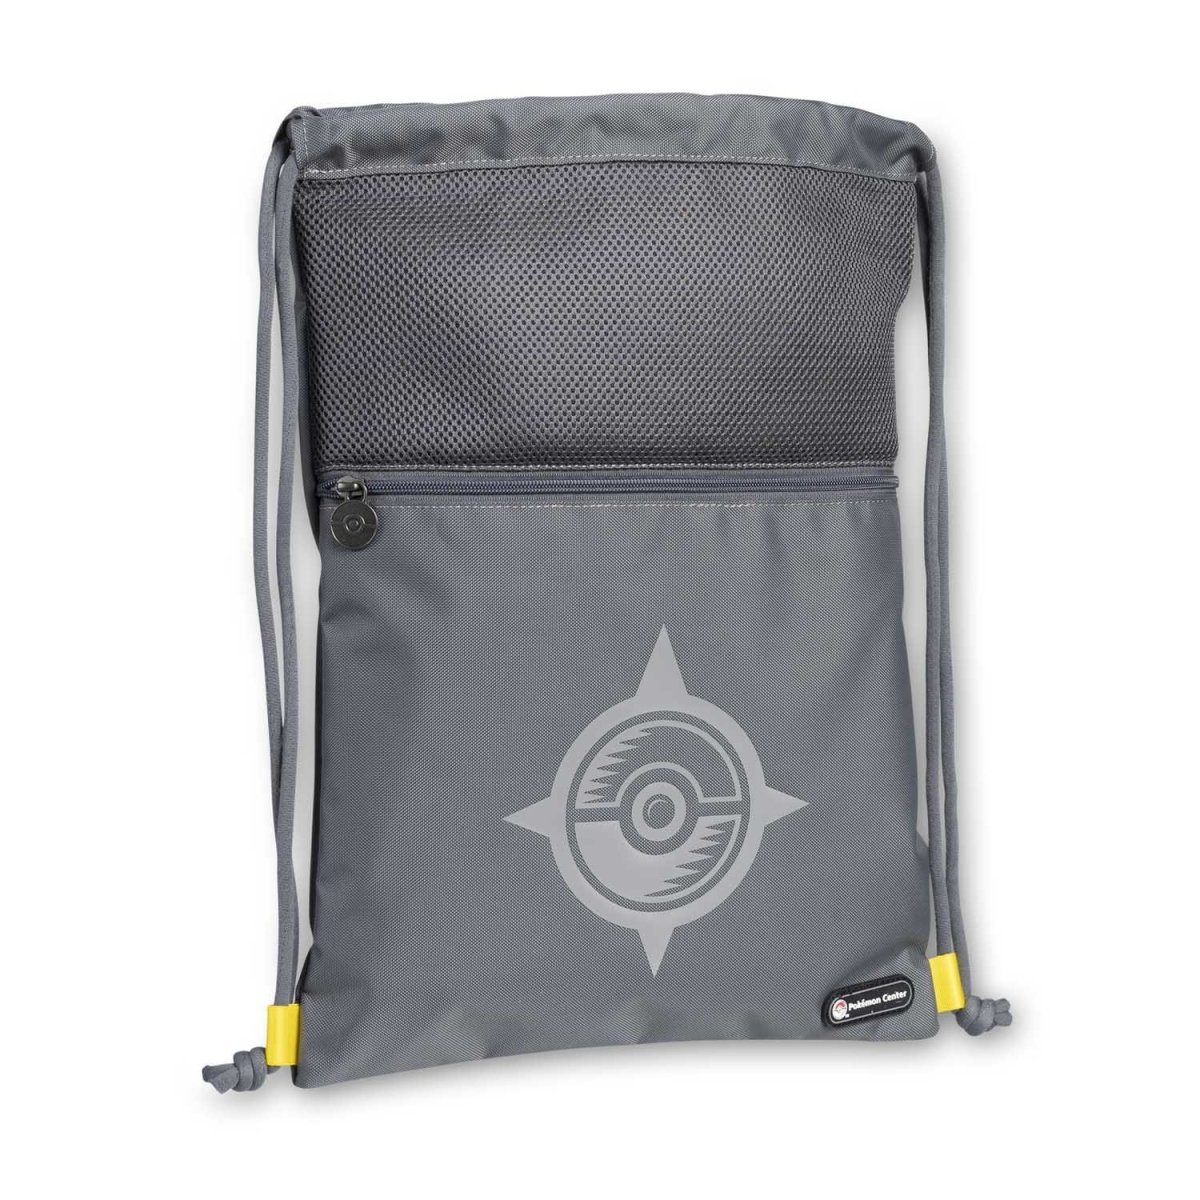 Pokemon Center 24 Drawstring Bag for Lunch Box